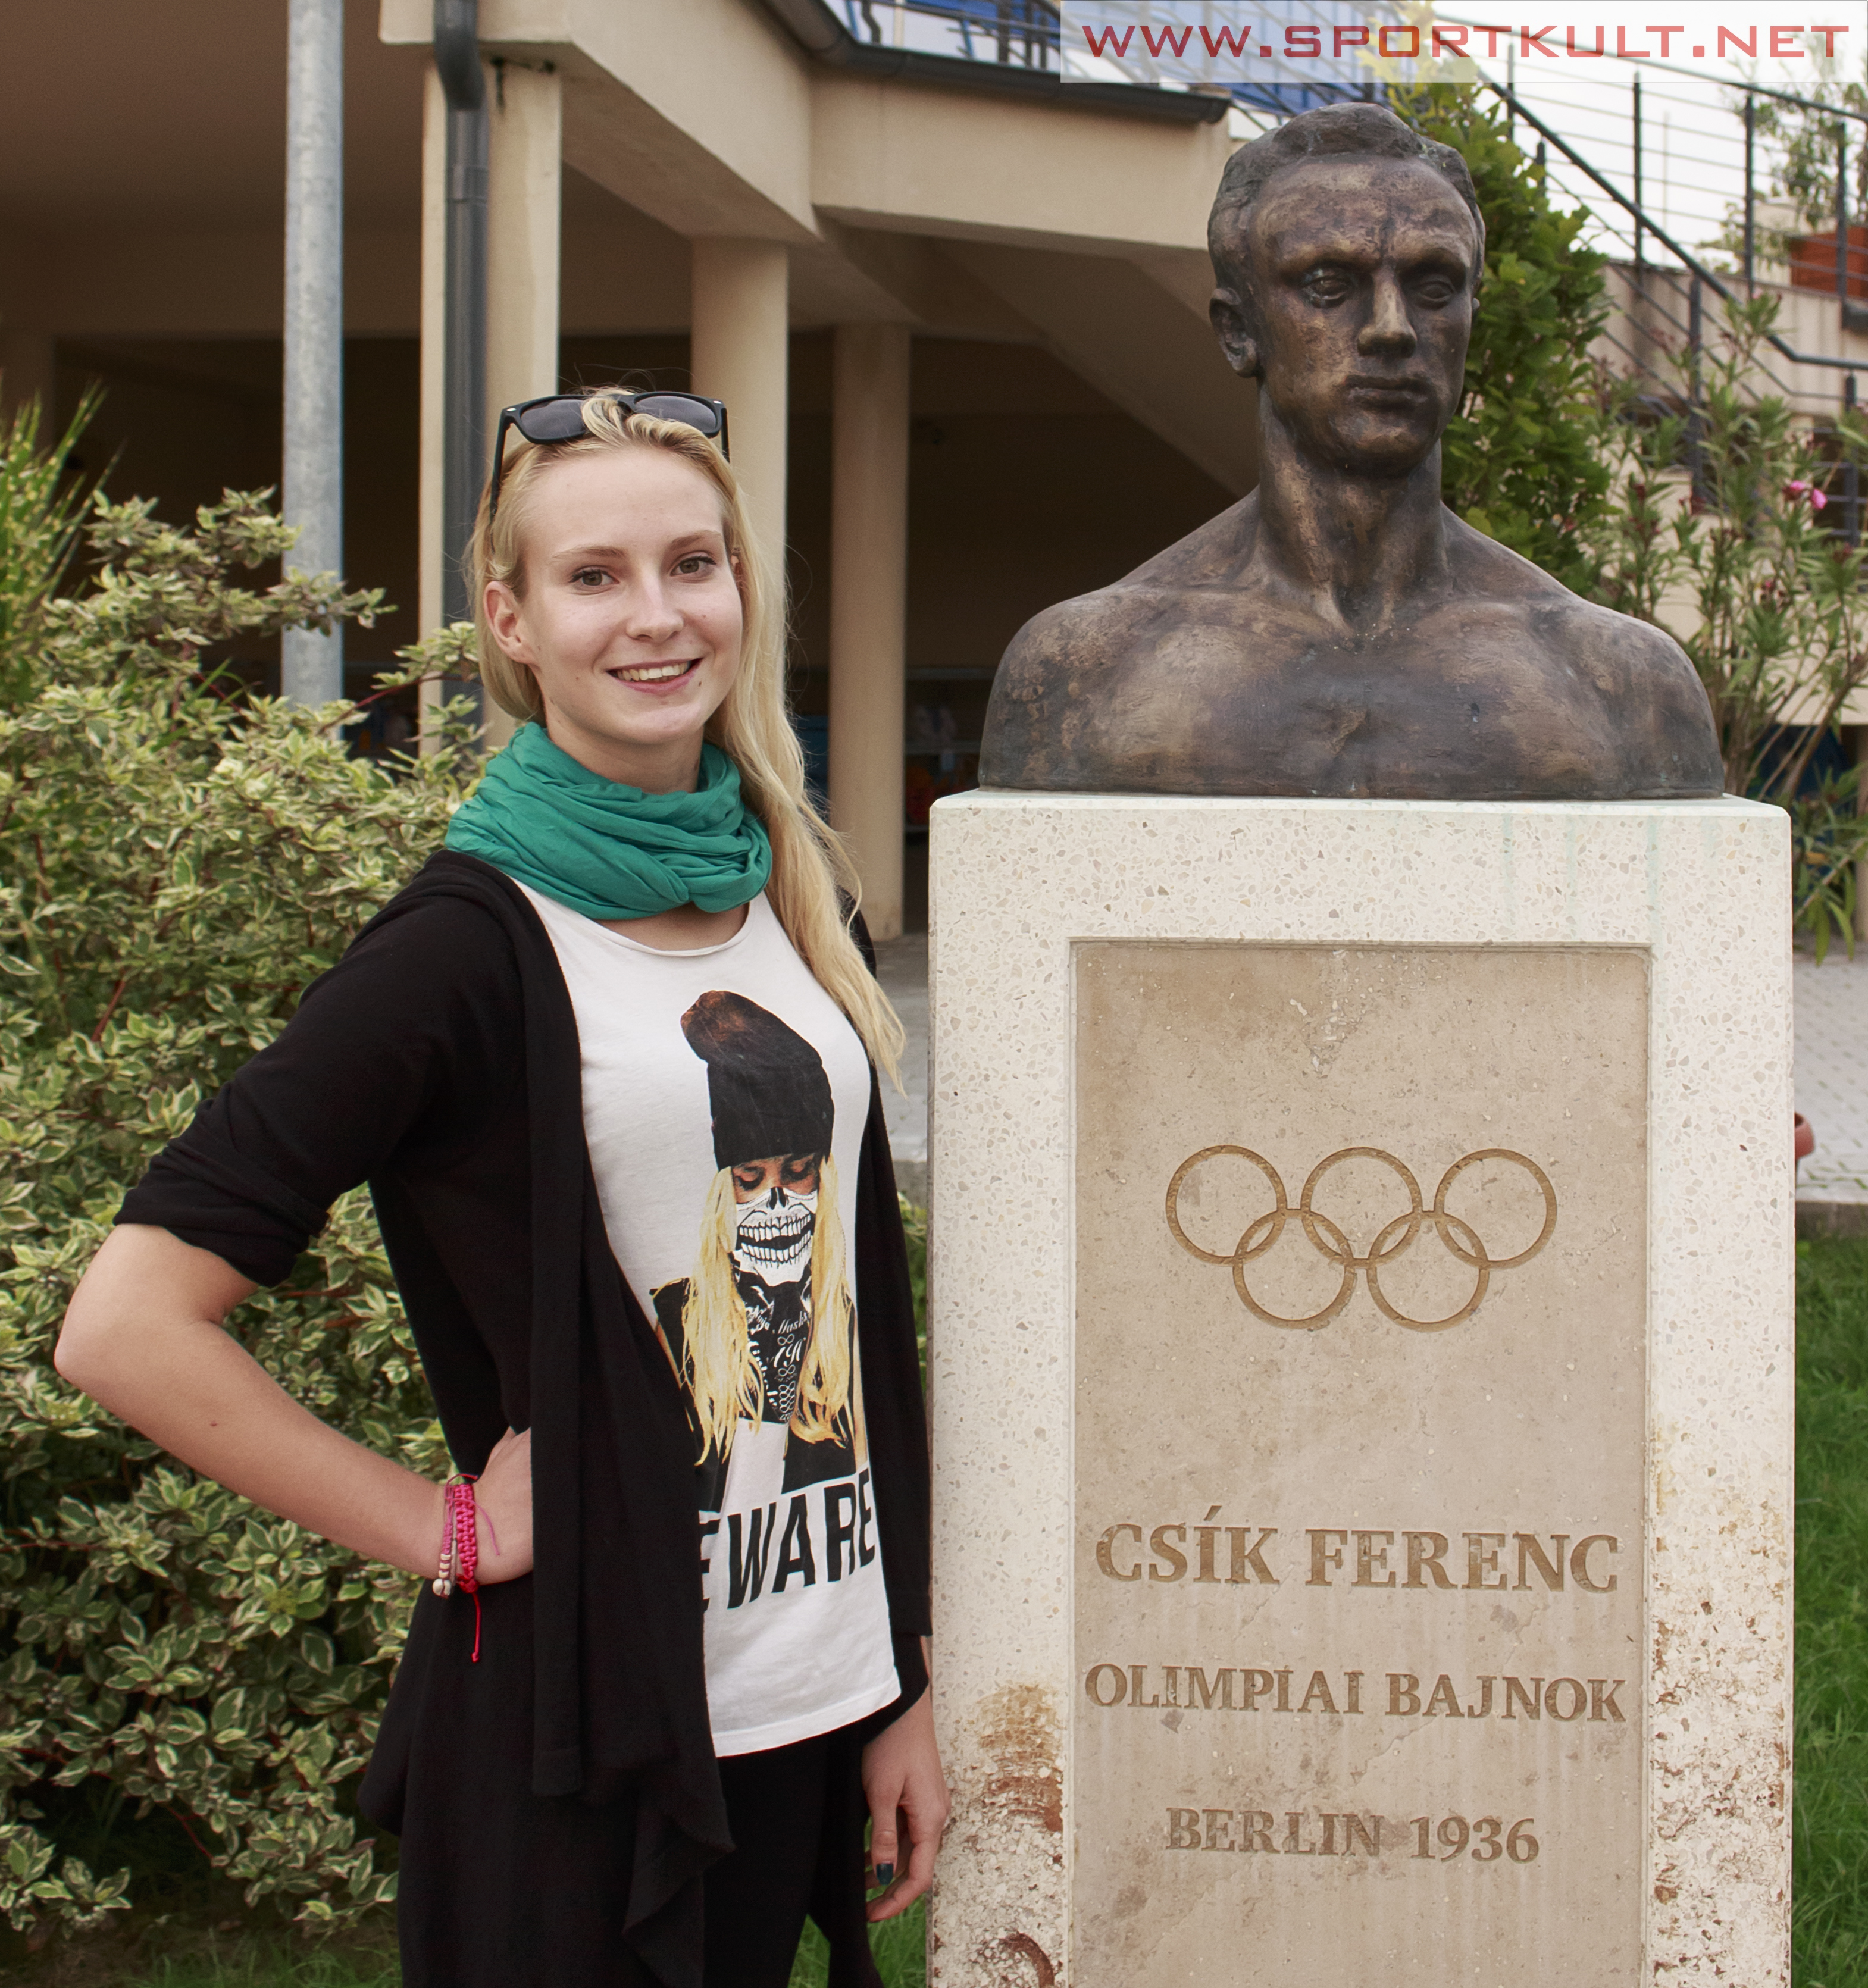 Koltai Kinga és Csík Ferenc szobra - mindkét "vizes" ember Berlinben ért el sikereket